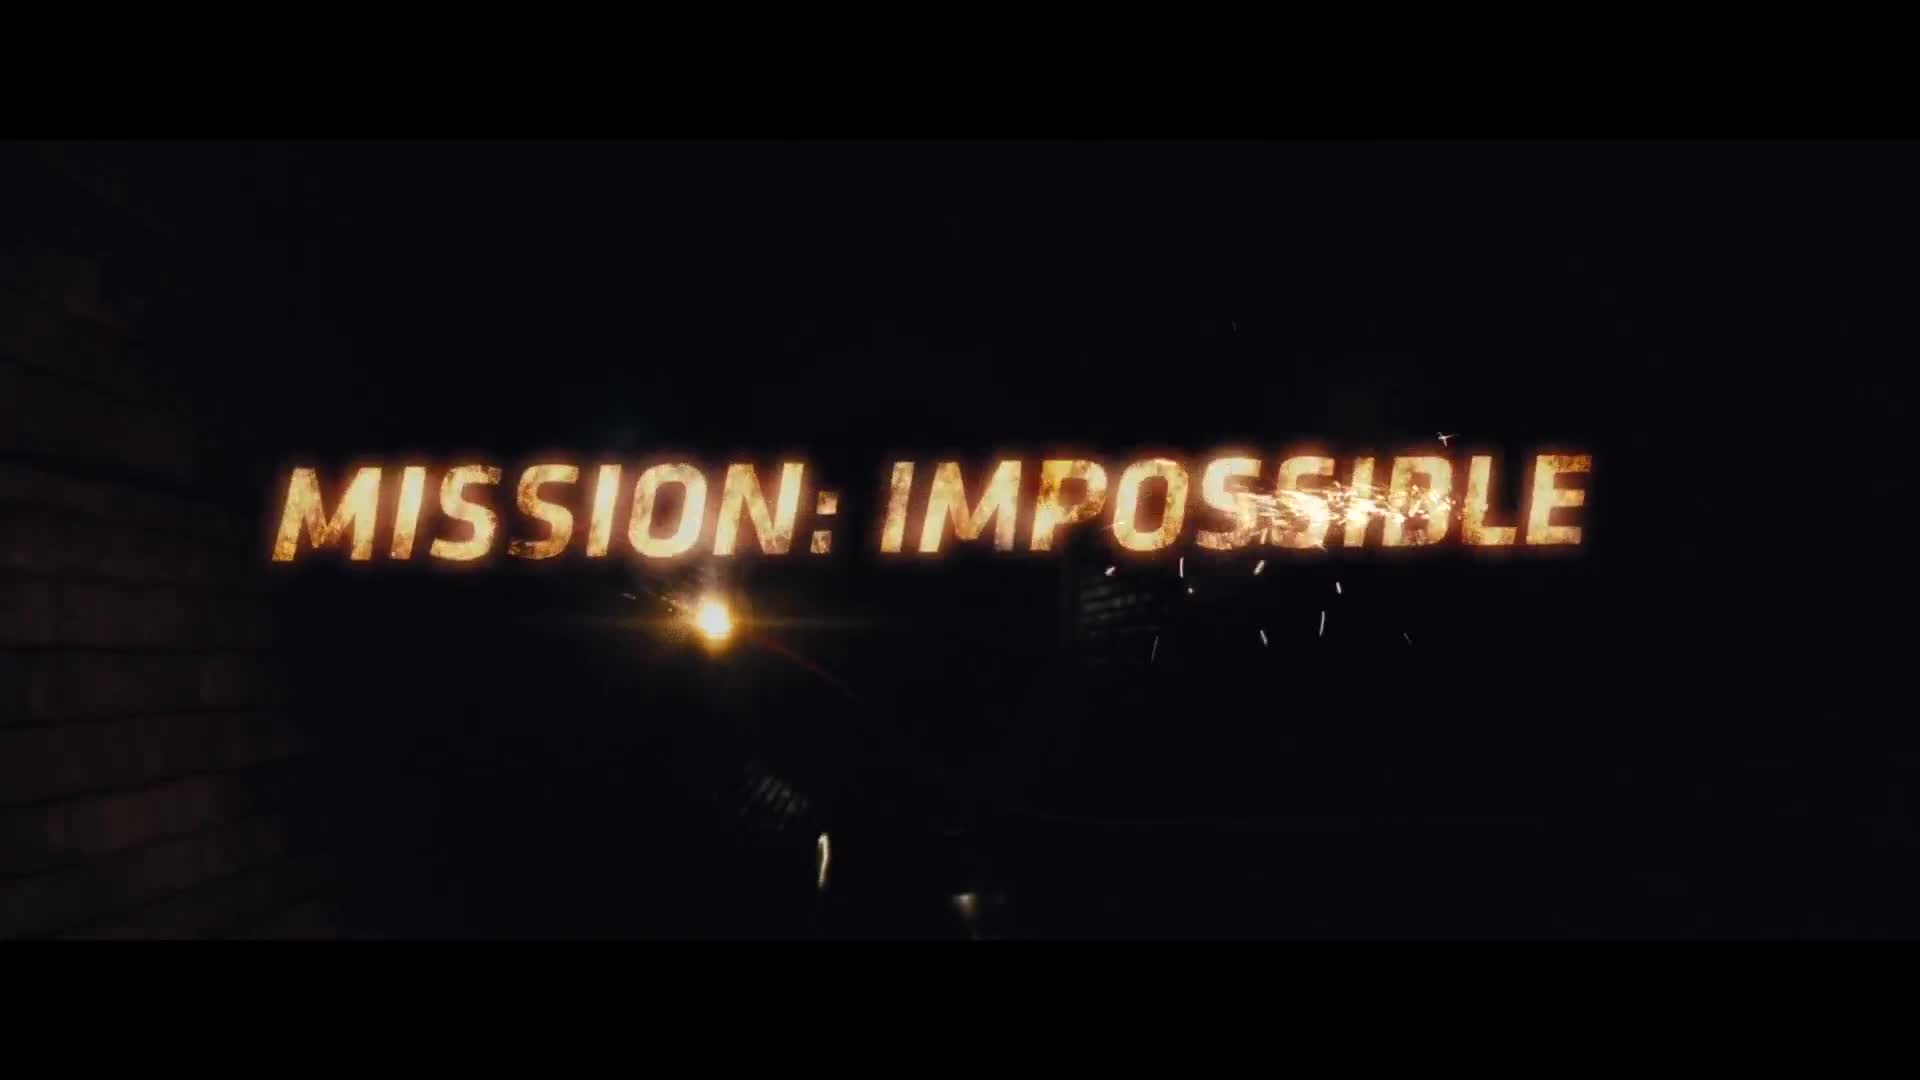 Mission Impossible 4 Ghost Protocol มิชชั่น อิมพอสซิเบิ้ล ปฏิบัติการไร้เงา (2011)